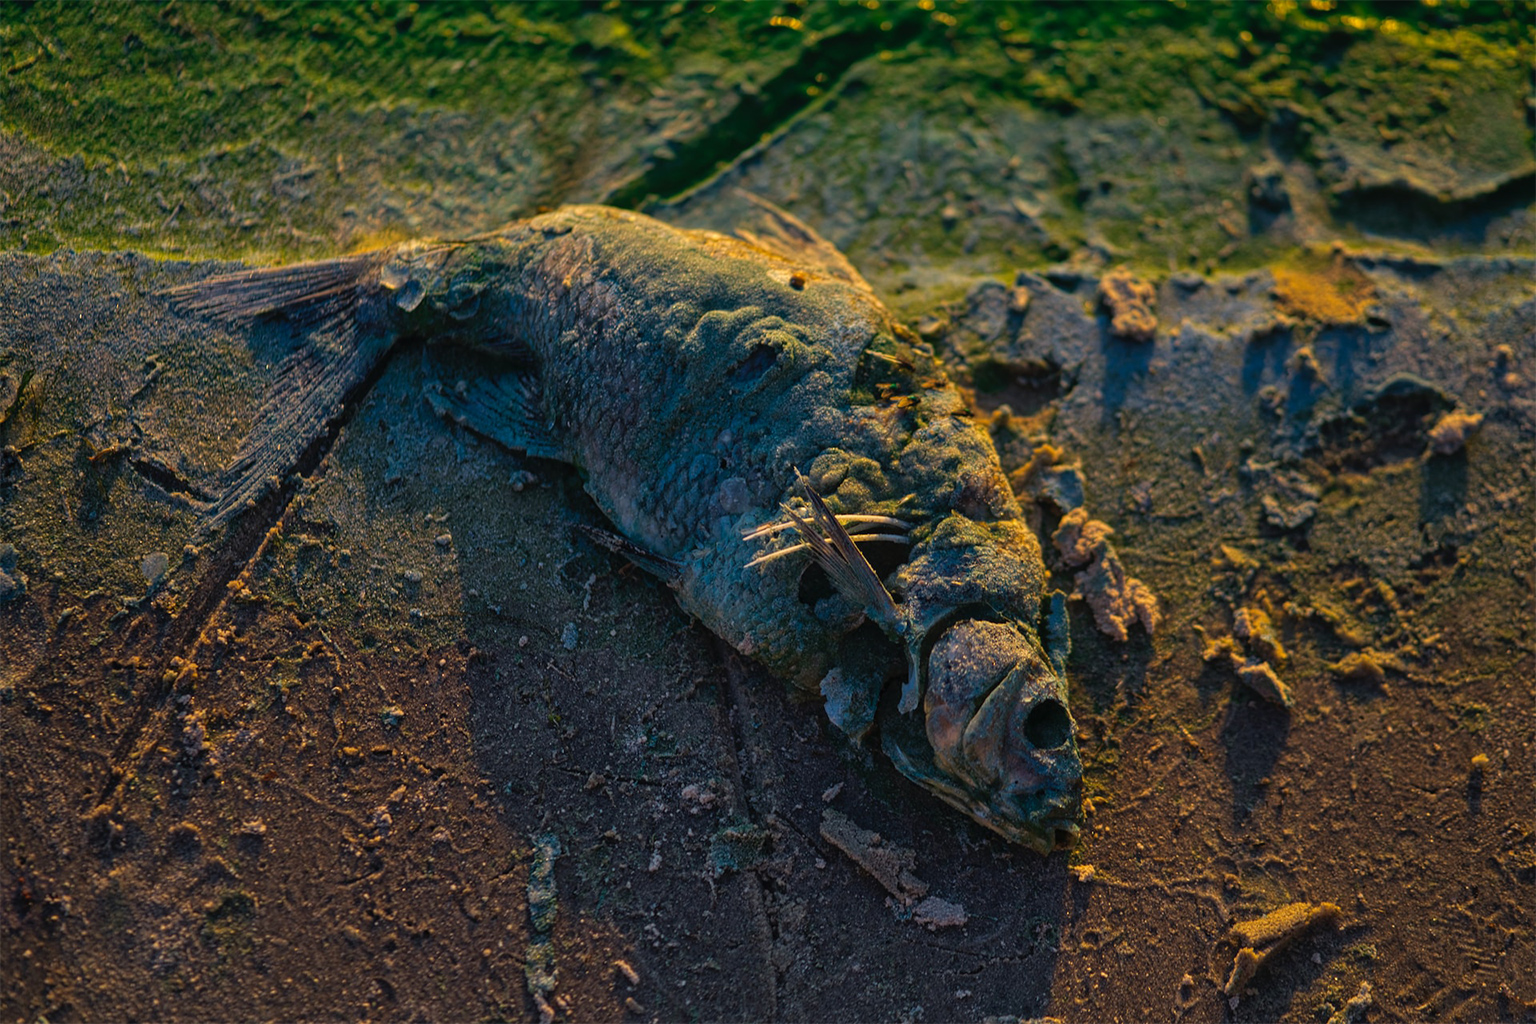 A dead cod